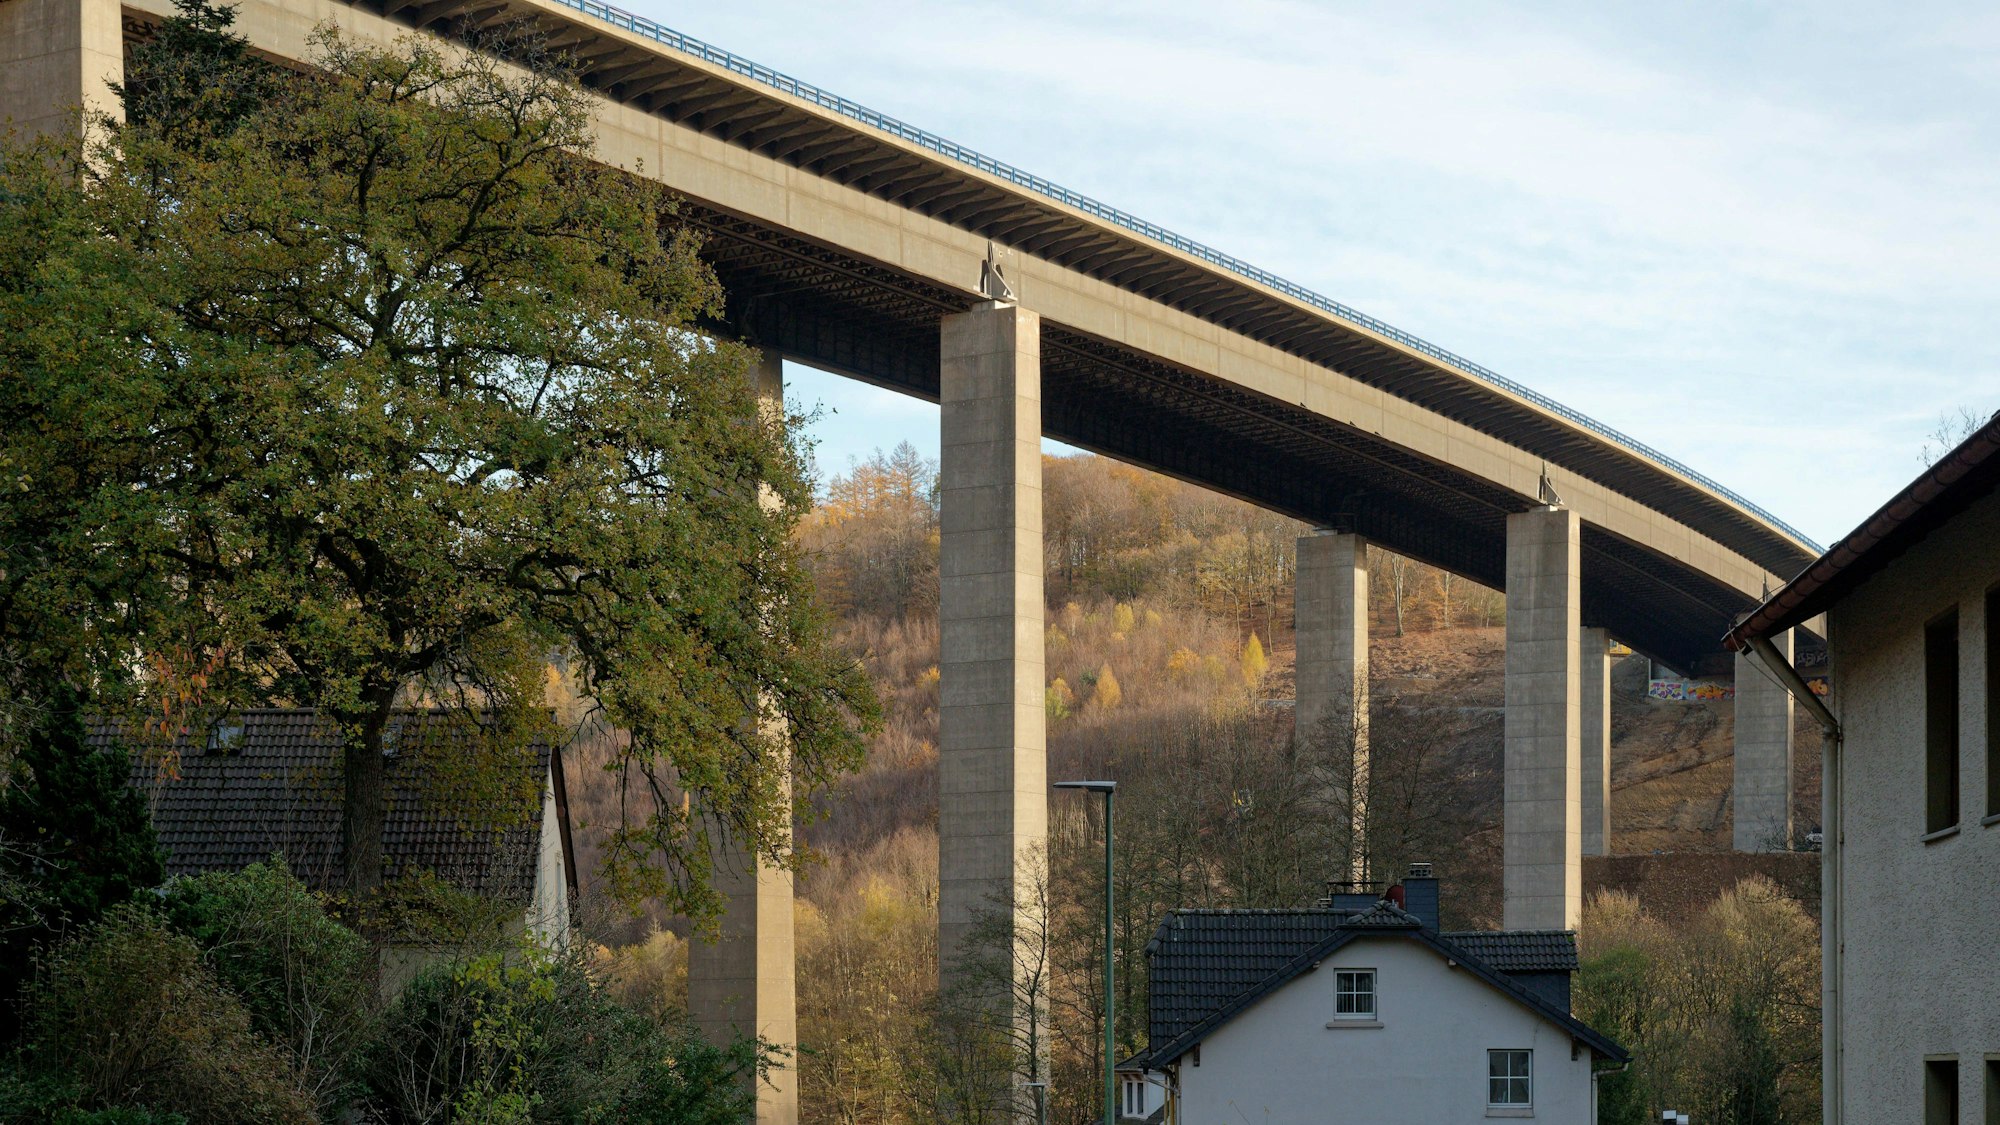 Die baufällige Talbrücke Rahmede führt die Autobahn A45 über das Tal des Flüsschens Rahmede.